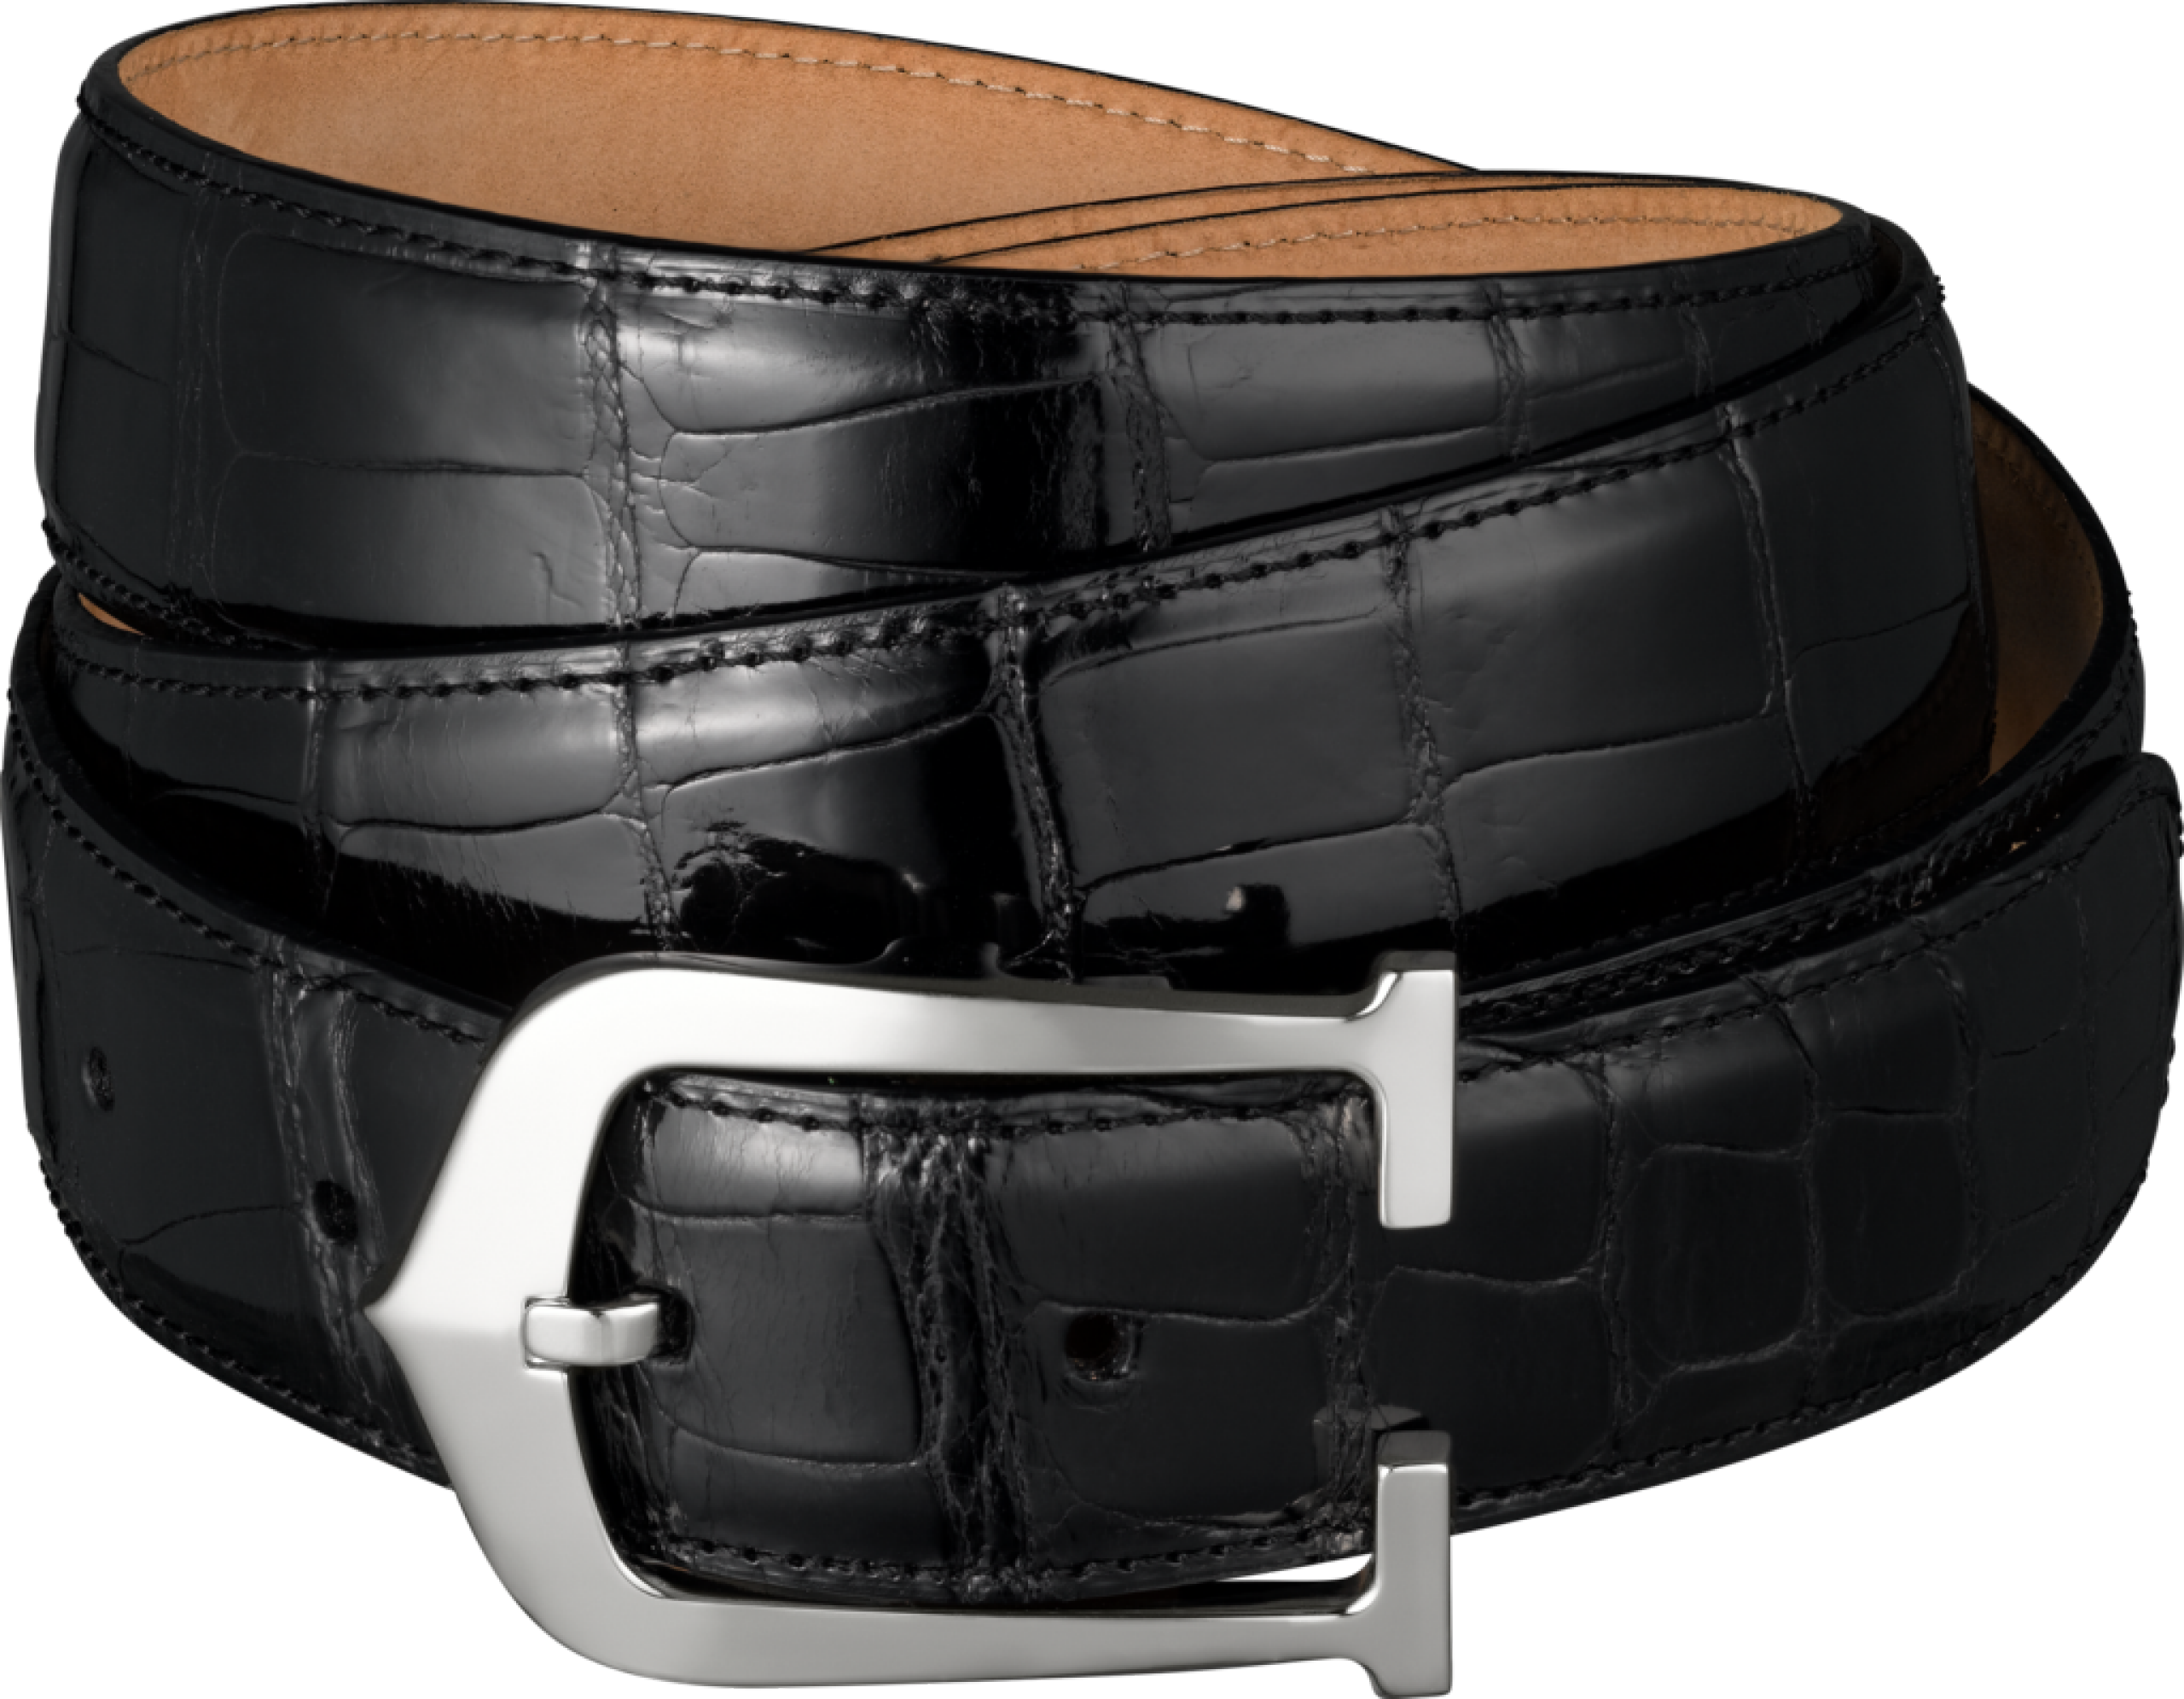 Black Leather Belt Png Image Black Leather Belt